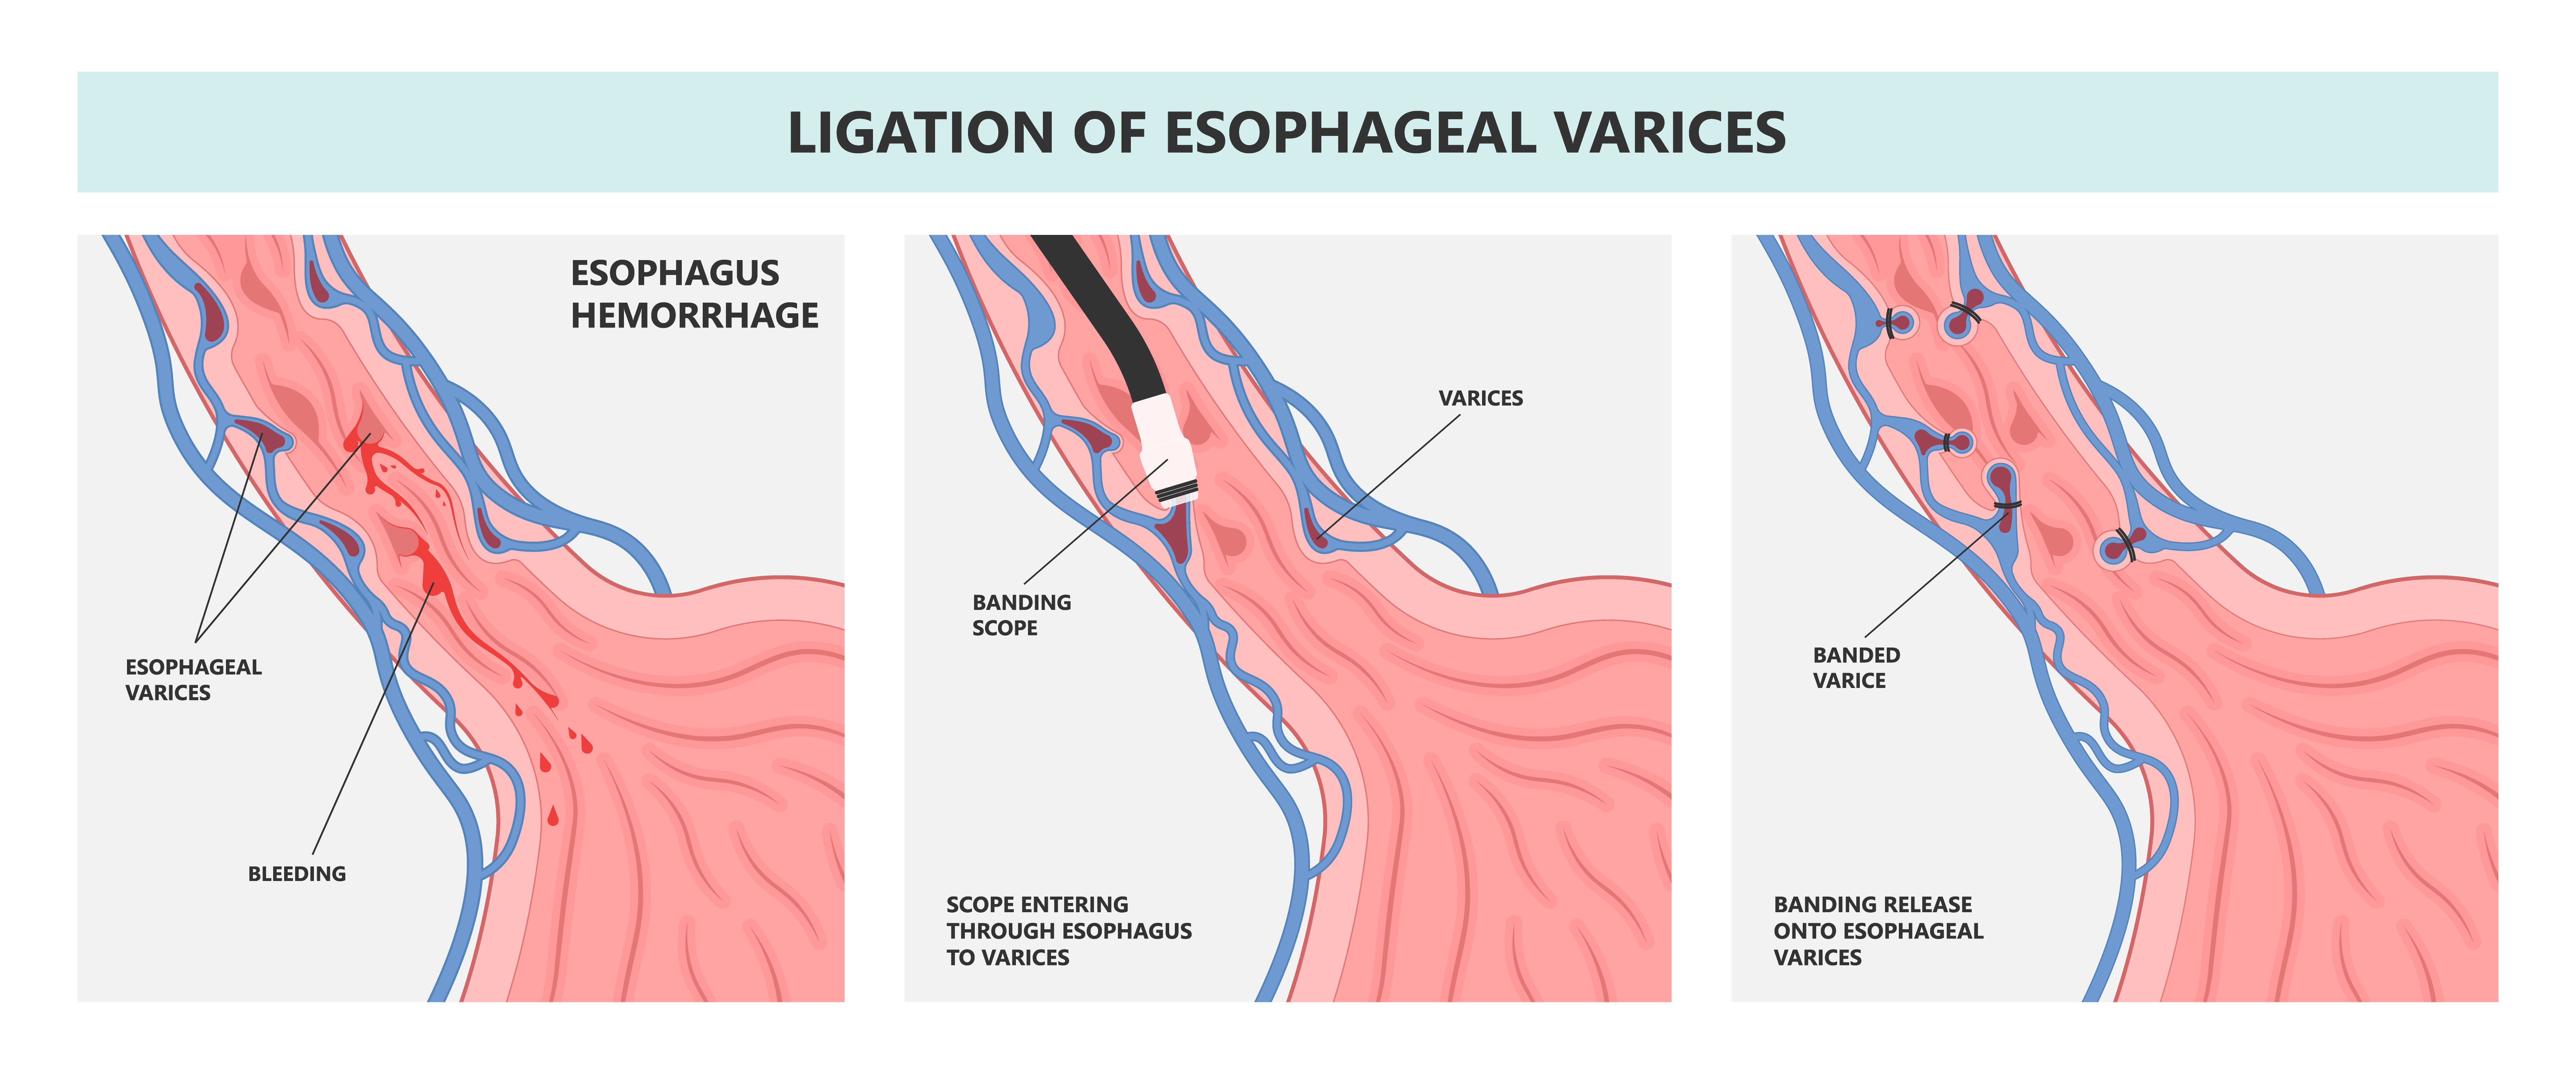 Esophageal-varices-ligation-[Converted]